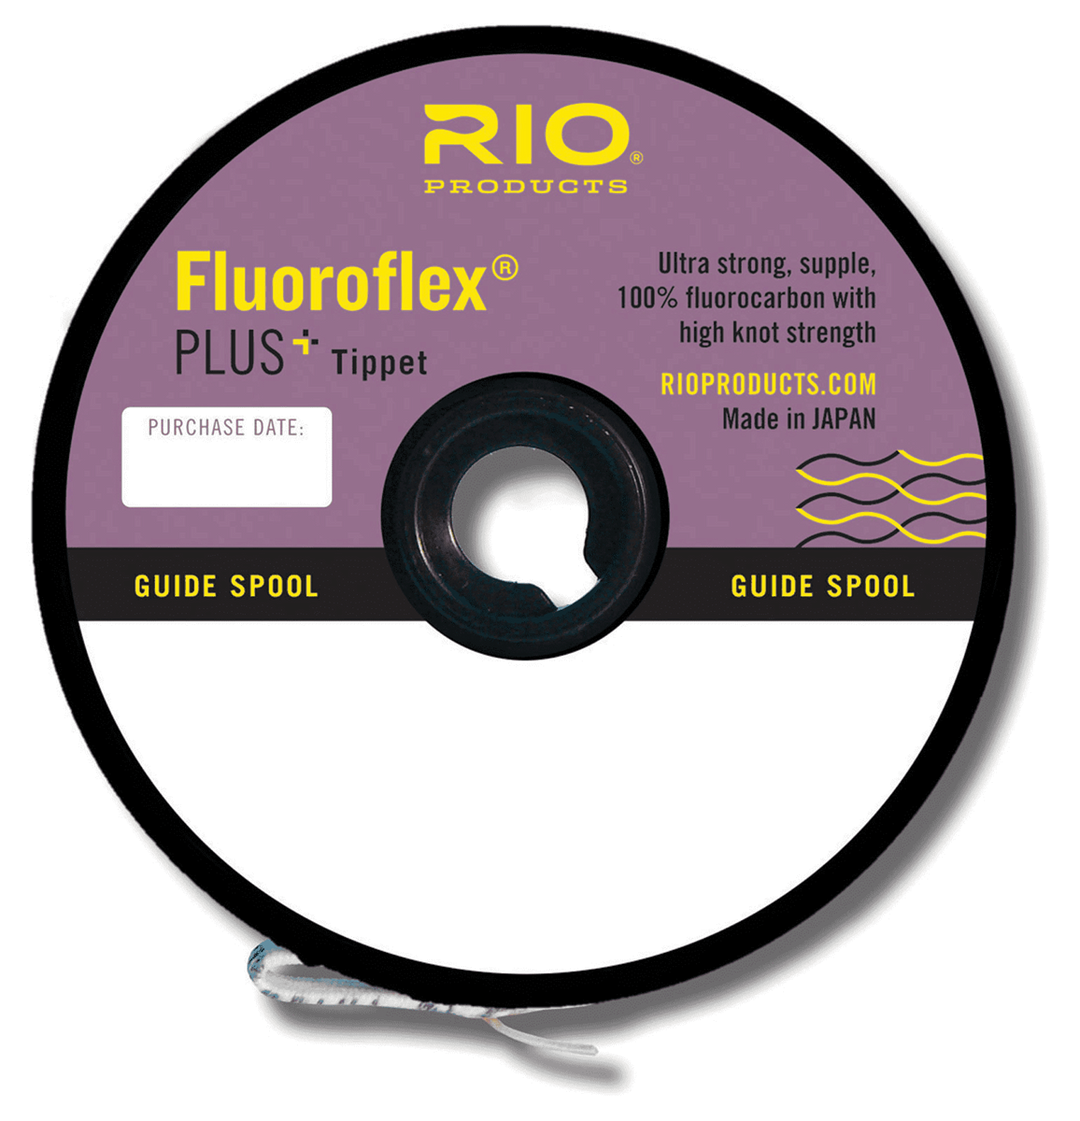 Fluoroflex Plus Tippet 30yd Spool